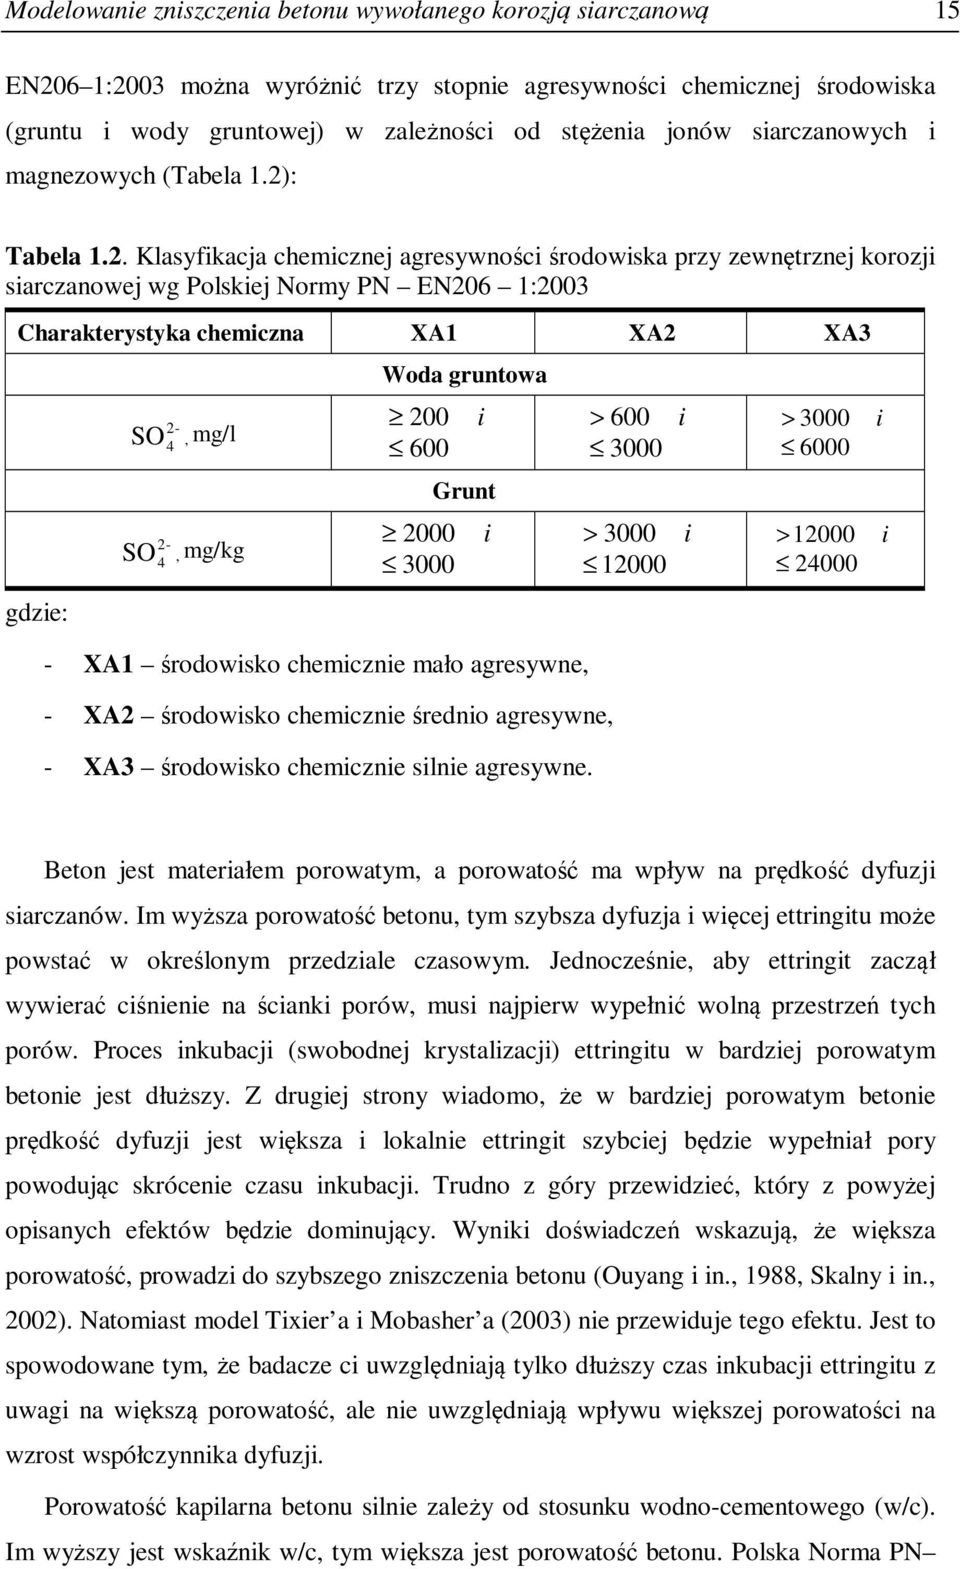 . Klsyfikj hemiznej gresywnośi środowisk przy zewnętrznej korozji sirznowej wg Polskiej Normy PN EN6 1:3 Chrkterystyk hemizn XA1 XA XA3 gdzie: - SO 4, mg/l - SO 4, mg/kg Wod gruntow 6 3 i Grunt - XA1